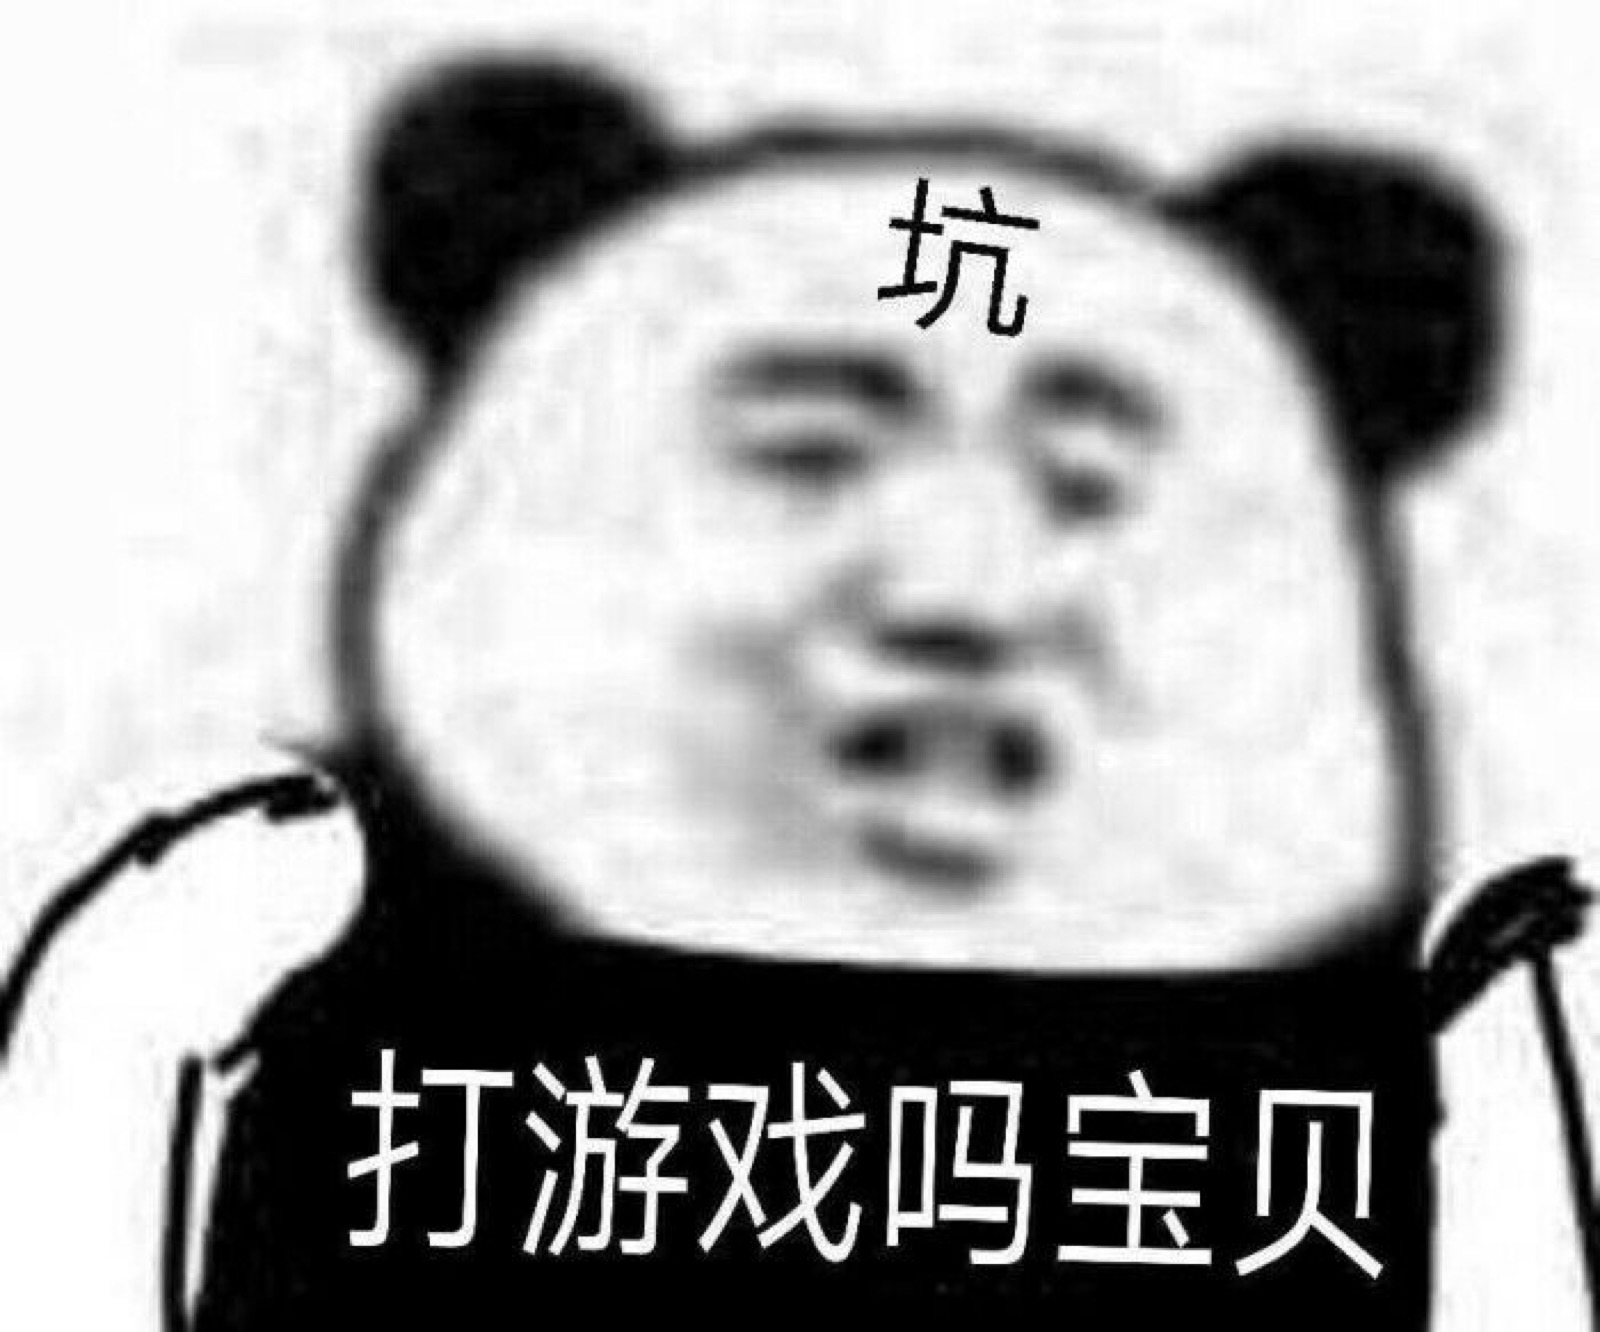 扭曲熊猫头 - 拉长脸憨厚熊猫头 - 斗图表情包 - 斗图神器 - adoutu.com